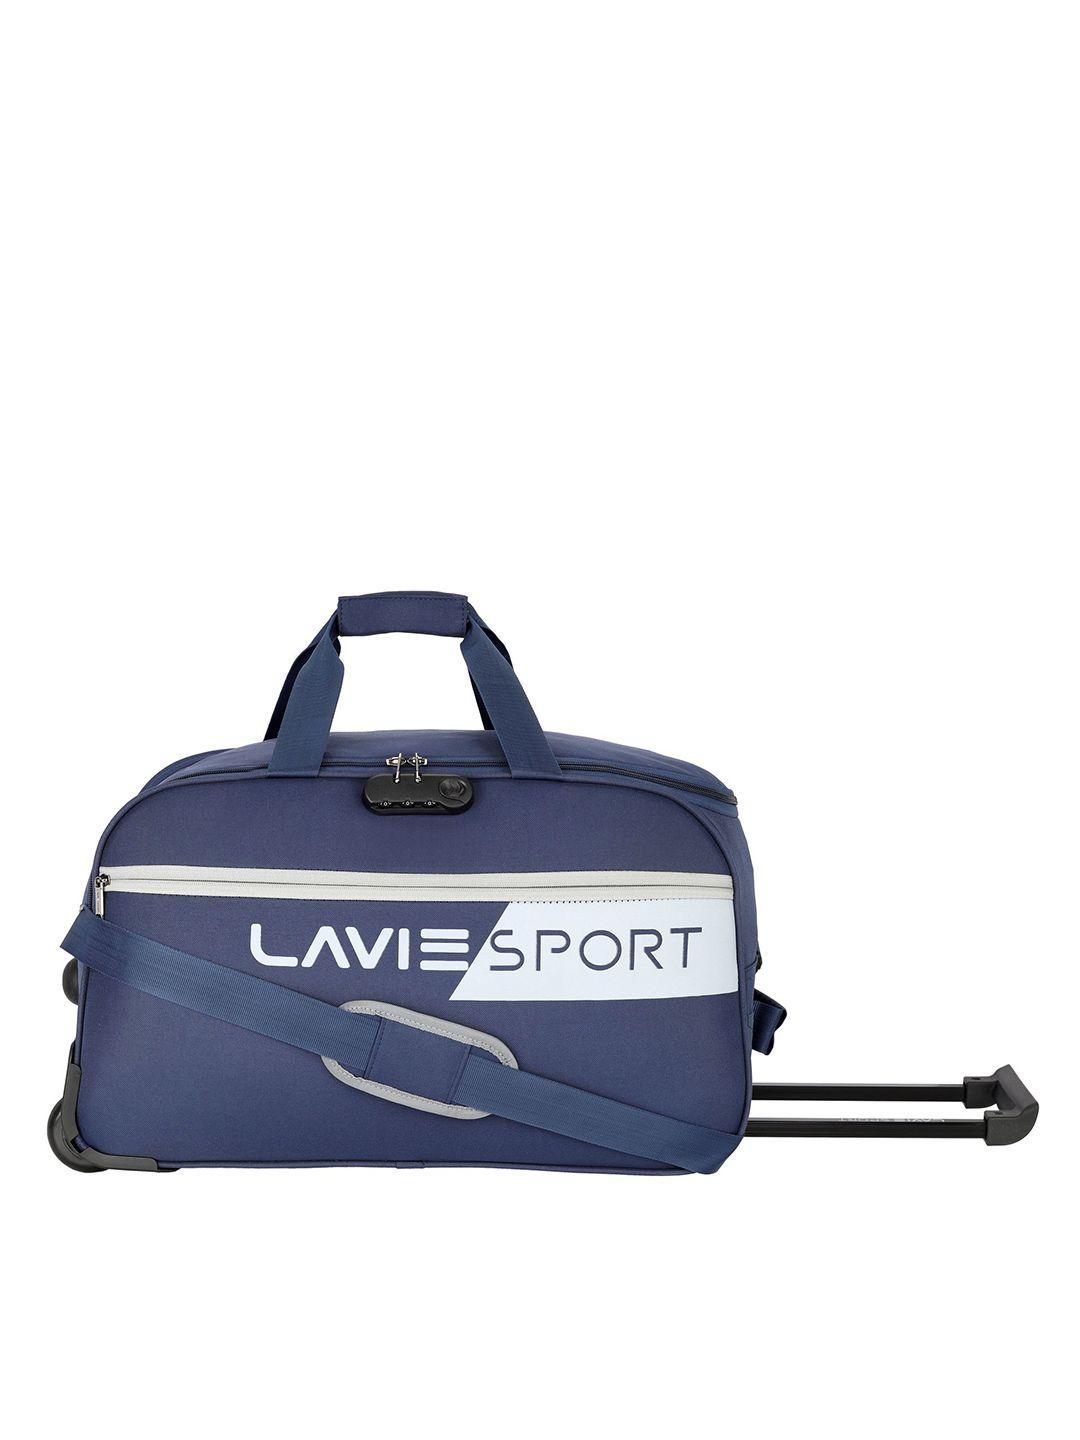 lavie sport navy blue printed duffel bag